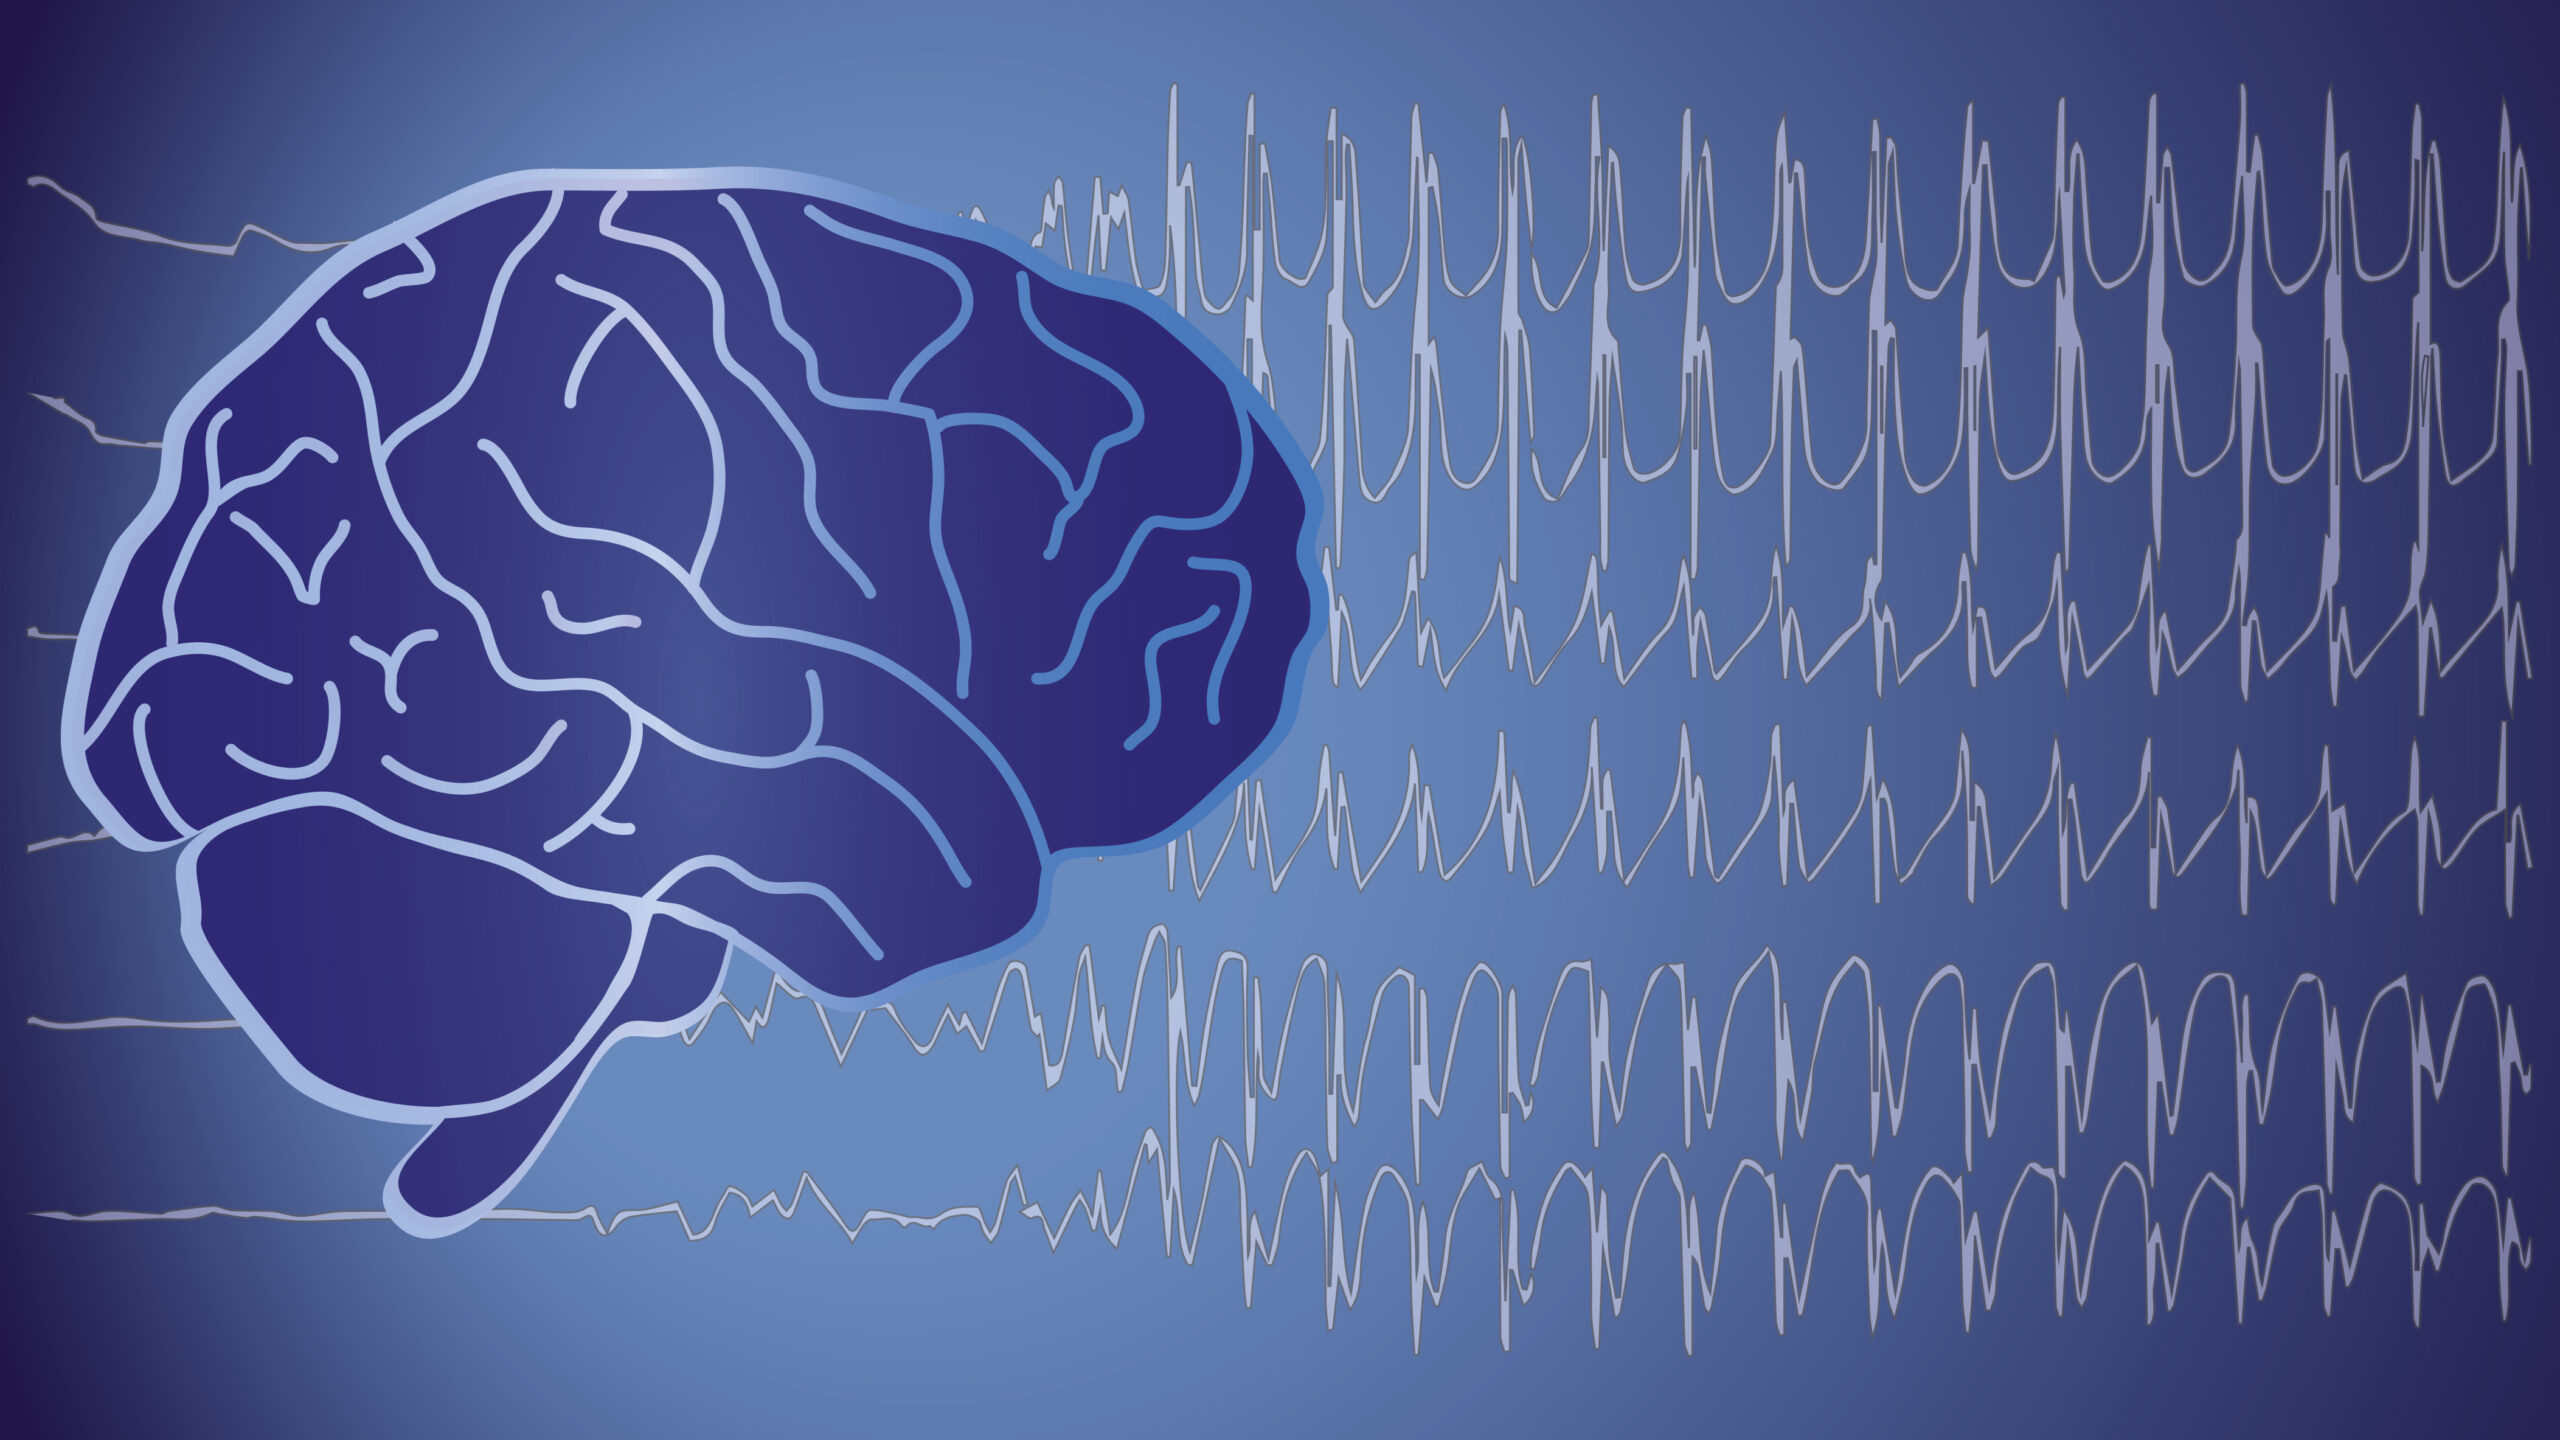 Ausgefeilte Datenanalyse ersetzt riskante Hirn-Stimulation